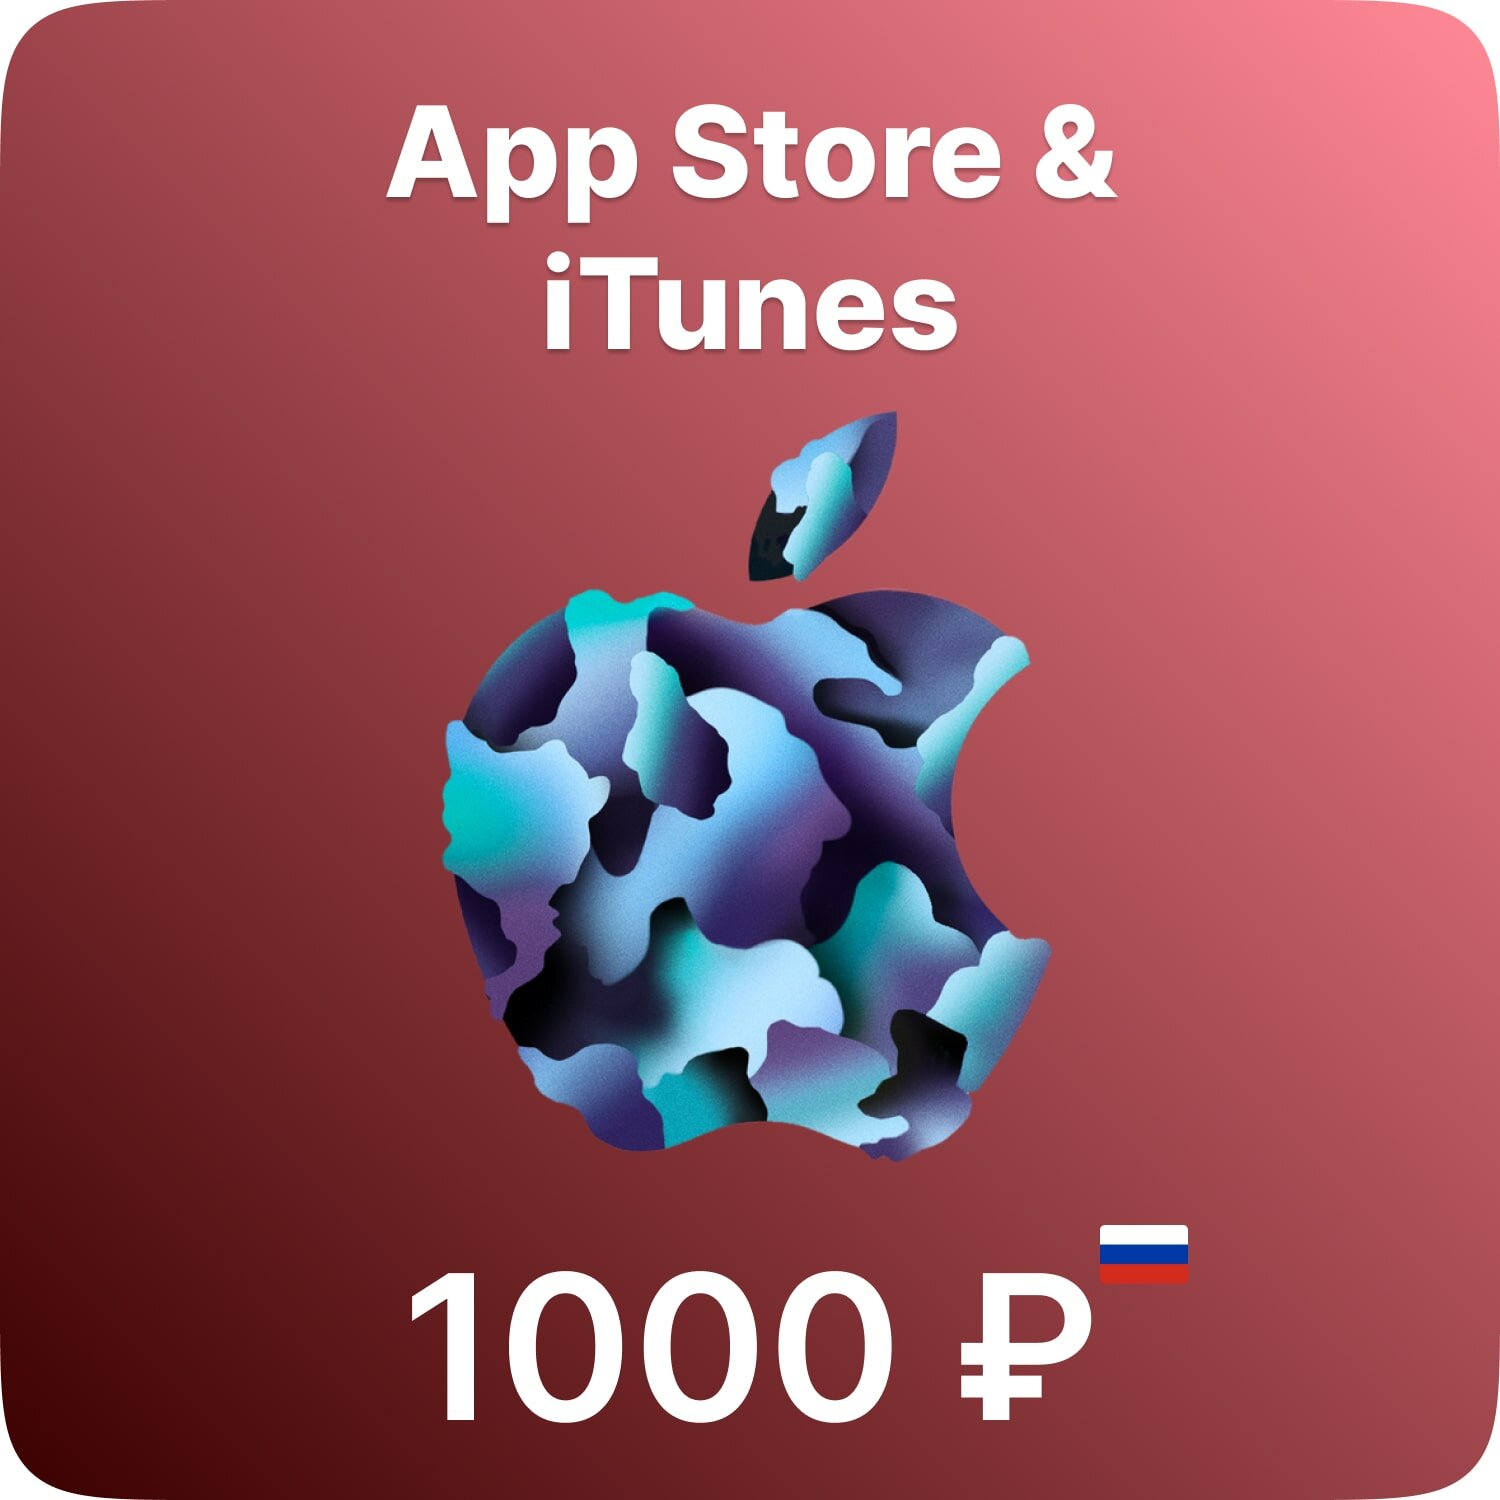 Подарочная карта App Store & iTunes 1000 рублей